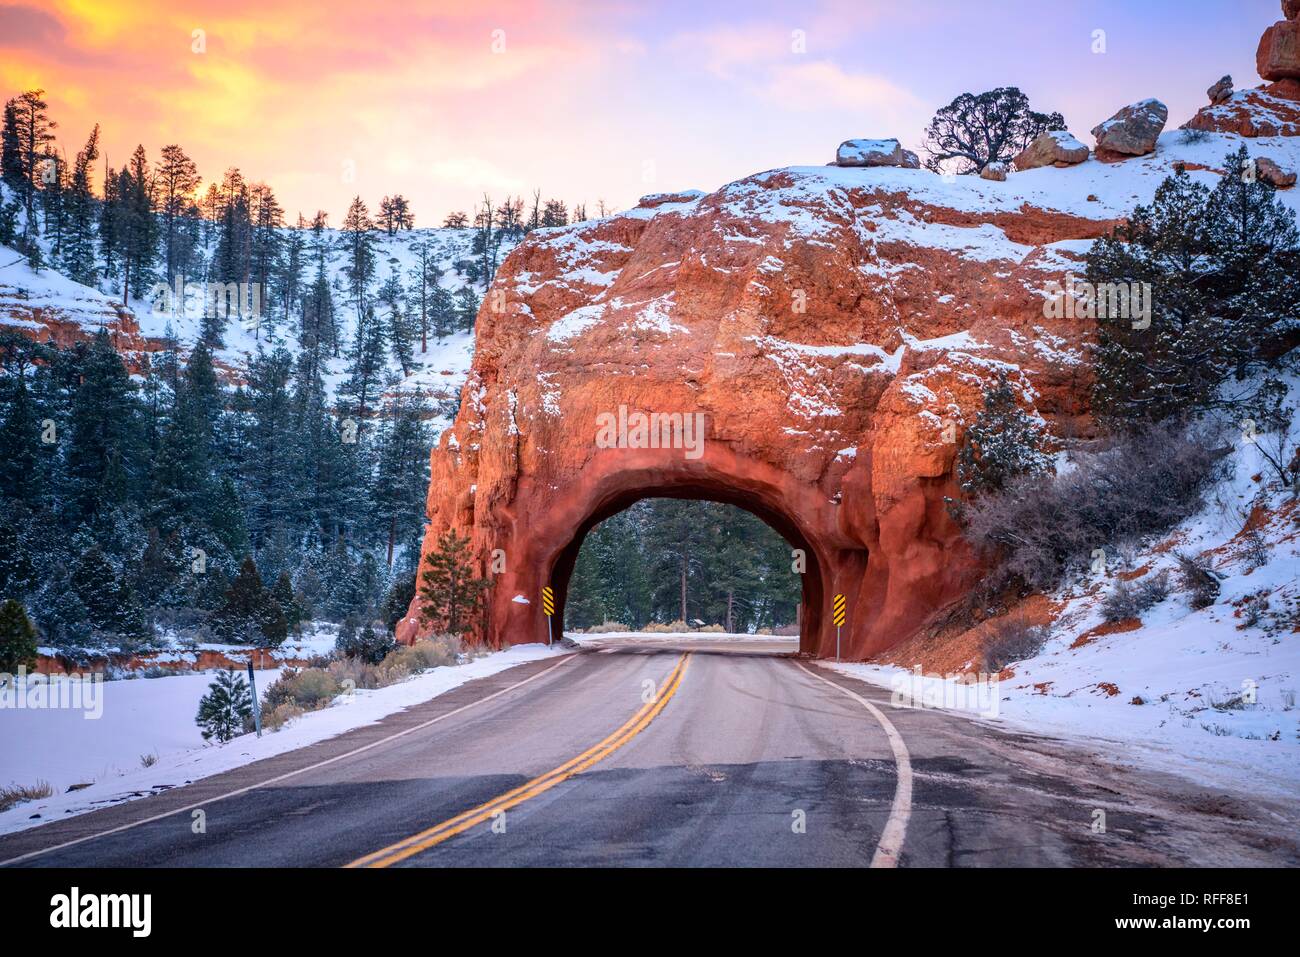 Route avec un tunnel à travers le red rock arch dans la neige, au coucher du soleil, l'autoroute 12, de rochers de grès, Red Canyon, Panguitch, Utah, USA Banque D'Images